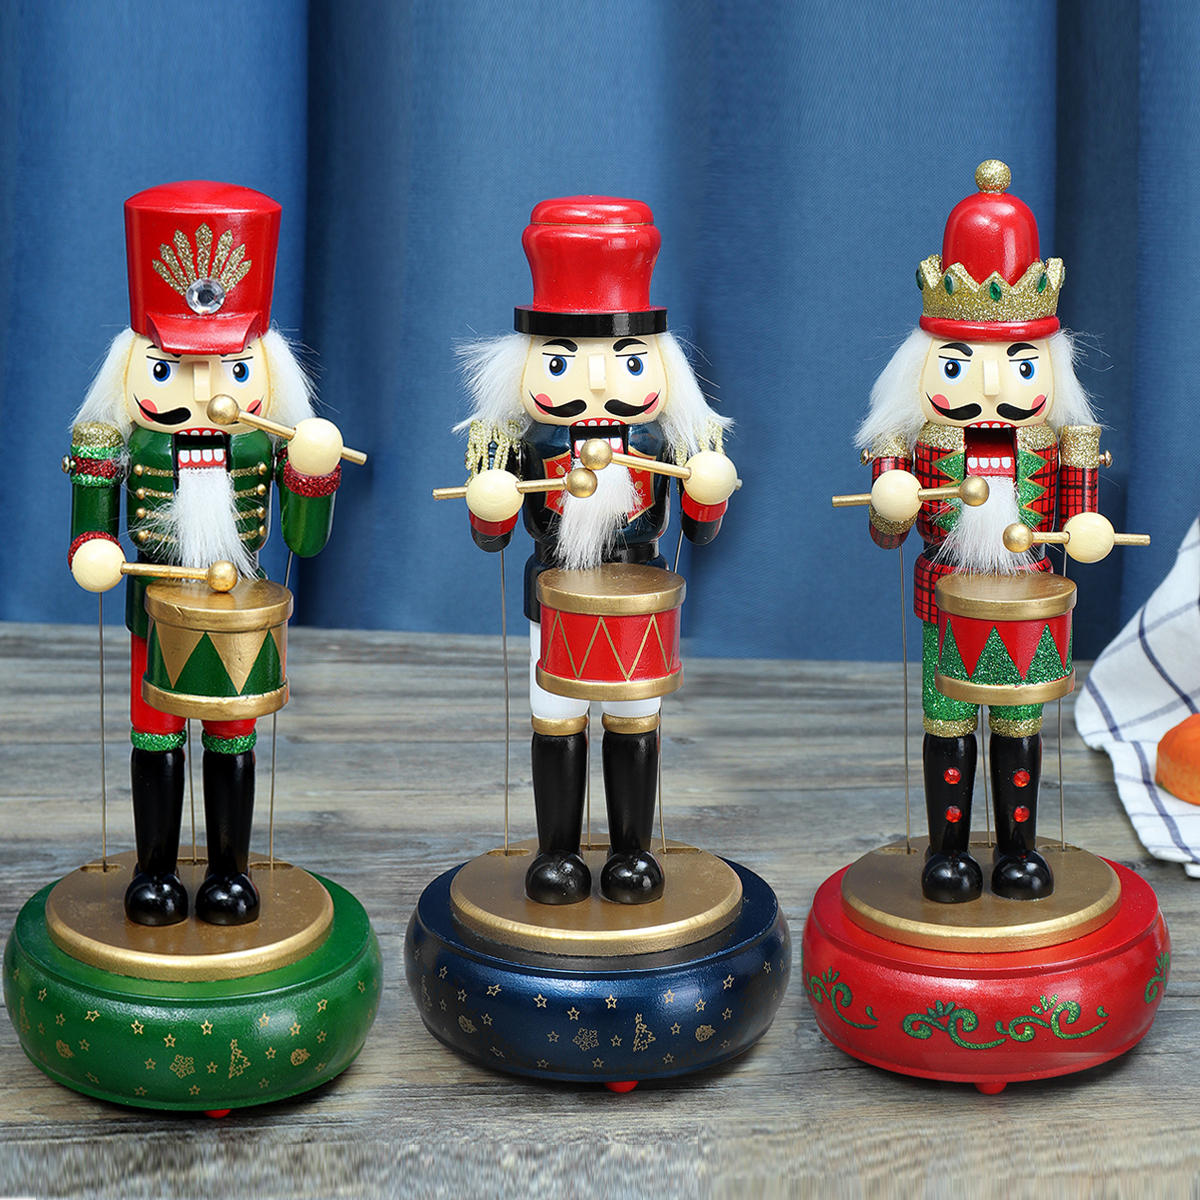 32 CM Holzschutz Nussknacker Soldat Spielzeug Spieluhr Weihnachtsschmuck Weihnachtsgeschenk